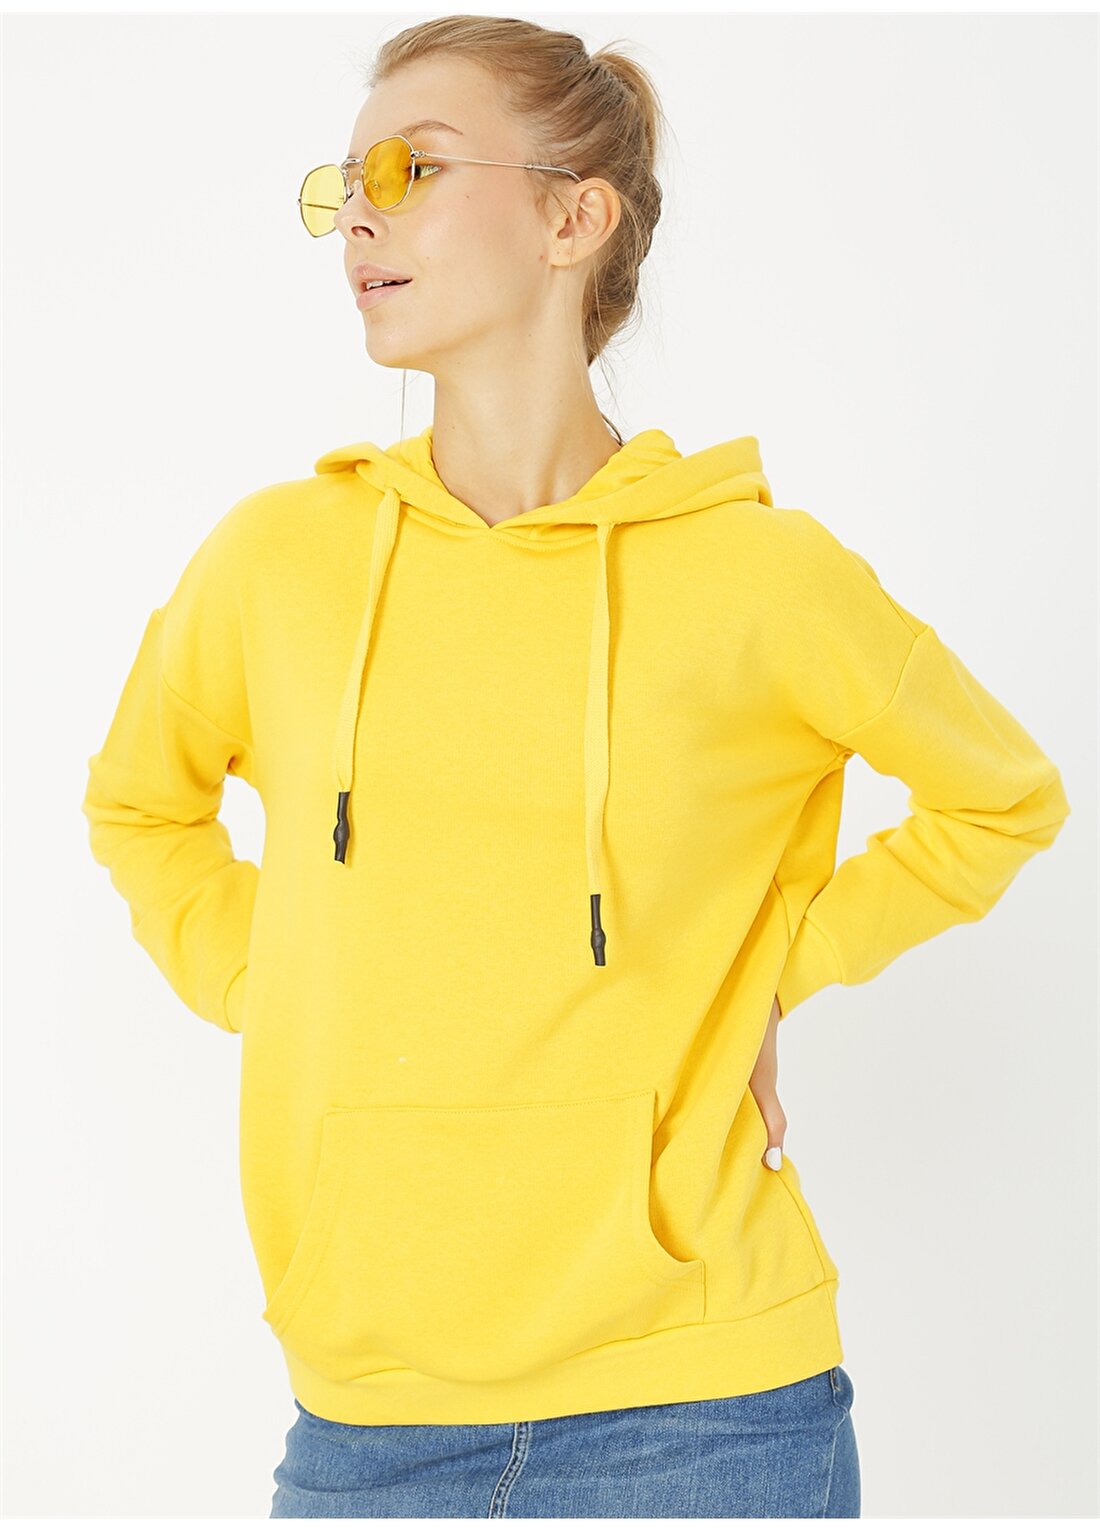 Limon Kapüşon Yaka Sarı Kadın Sweatshirt